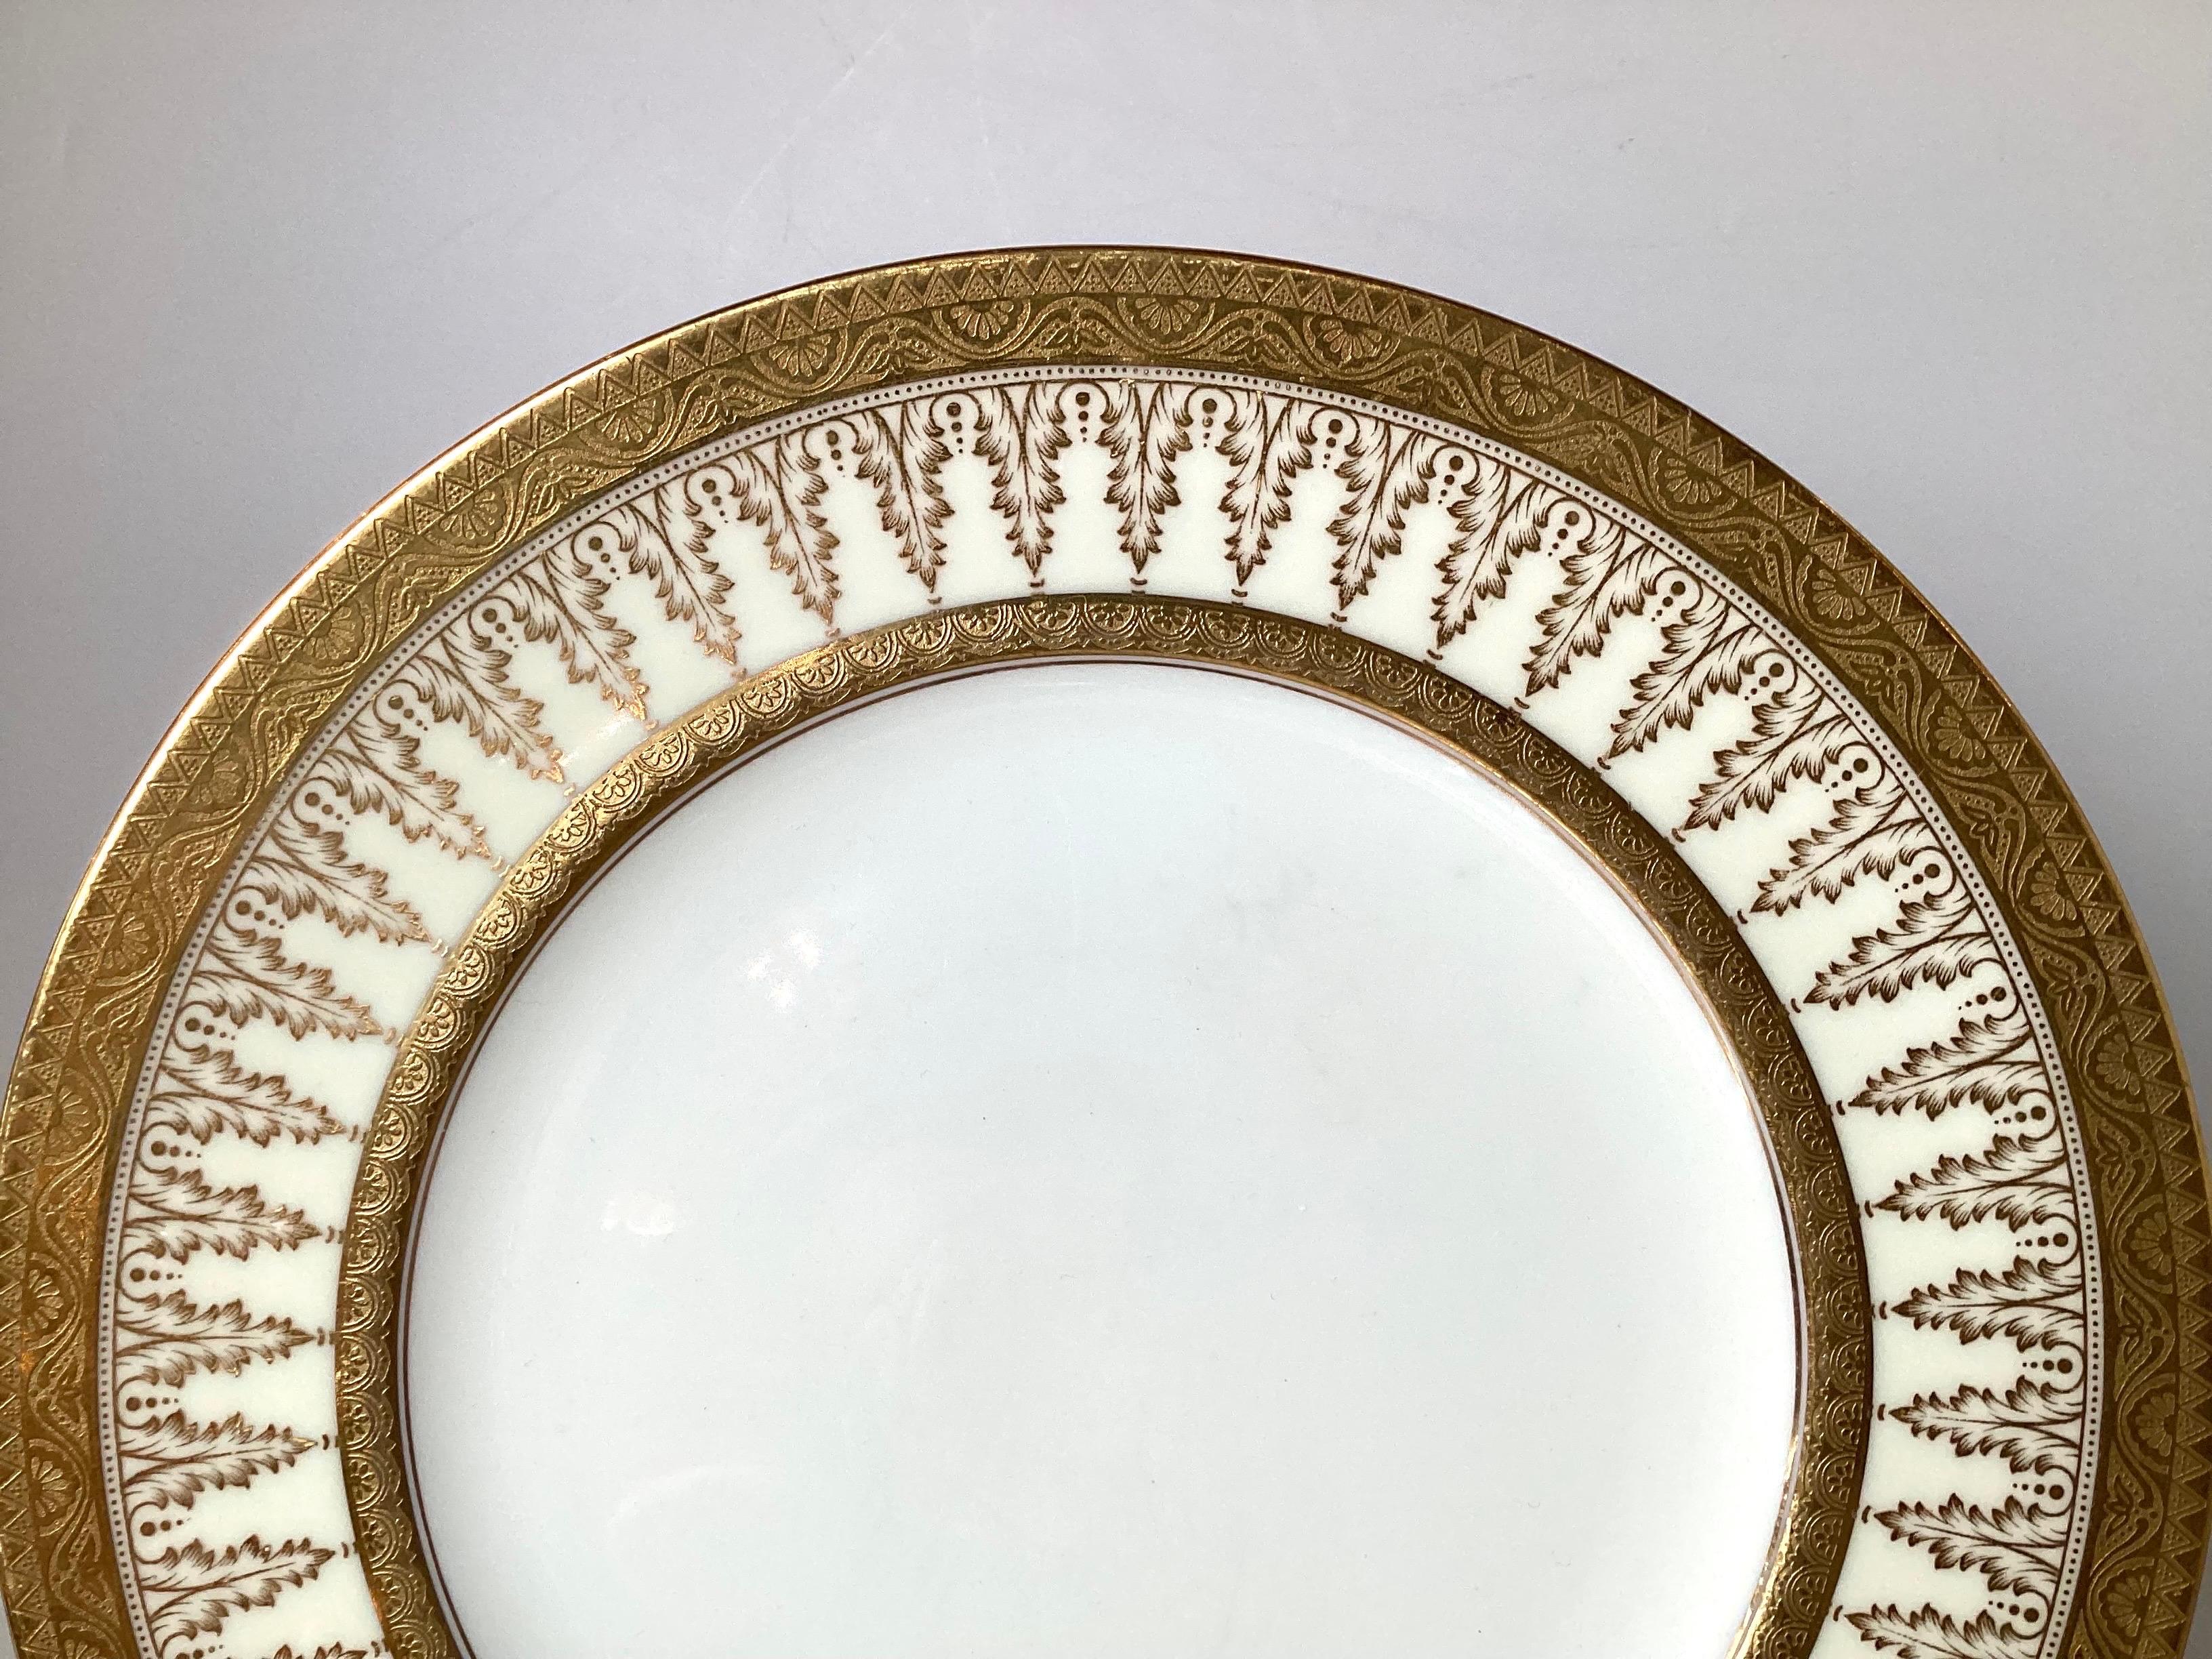 Un ensemble de dix élégantes assiettes de service de l'époque d'Eleg, fabriquées par Cauldon. Les bordures en or avec un décor de feuilles d'acanthe répétées, vendues par Tiffany, Angleterre, début du 20e siècle.